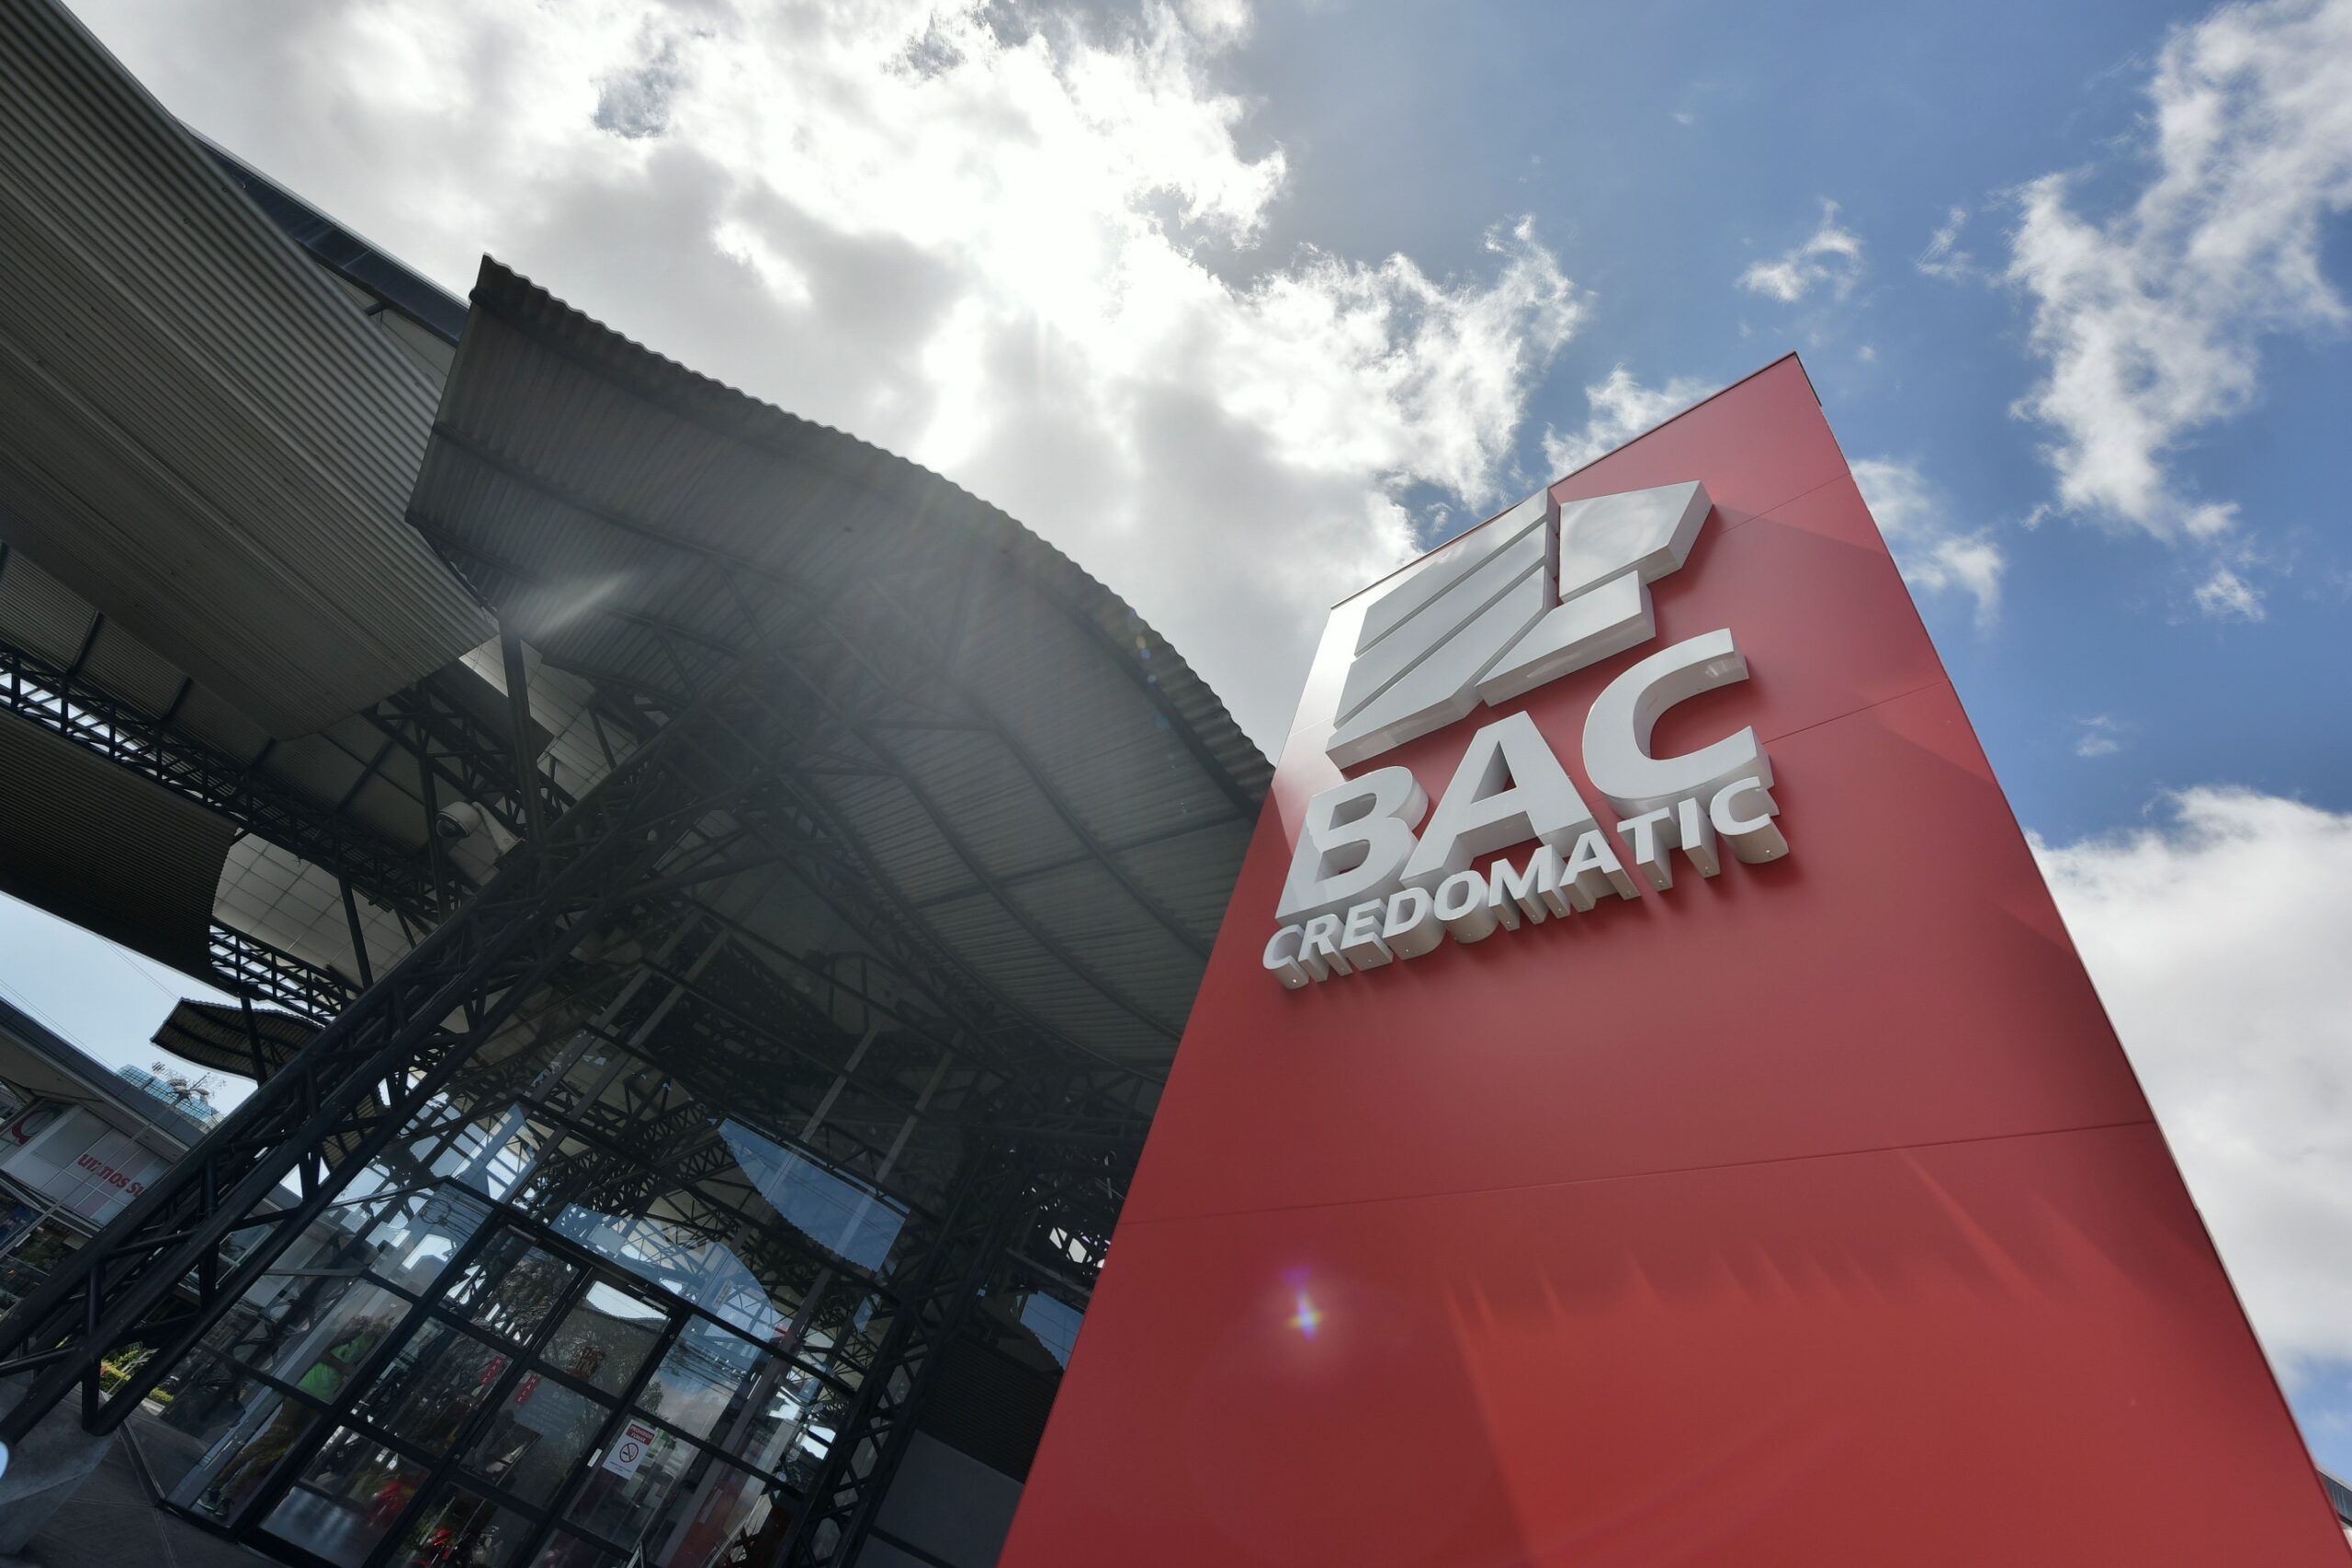 BAC Credomatic destaca como Mejor Banco de Centroamérica y el Caribe